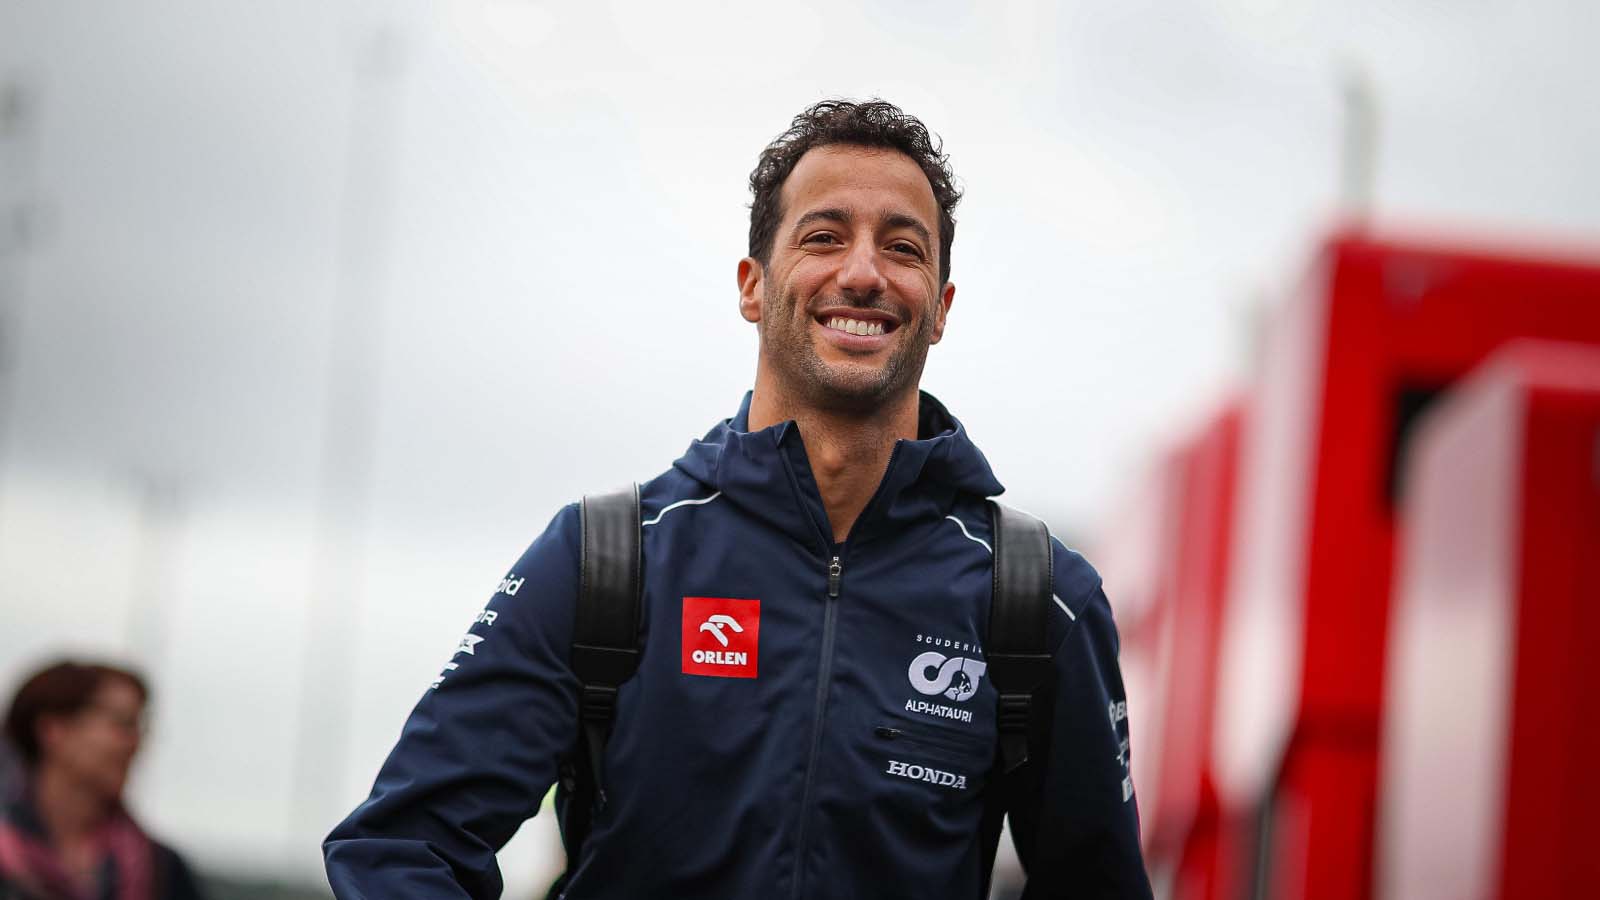 Daniel Ricciardo in the paddock at Spa.